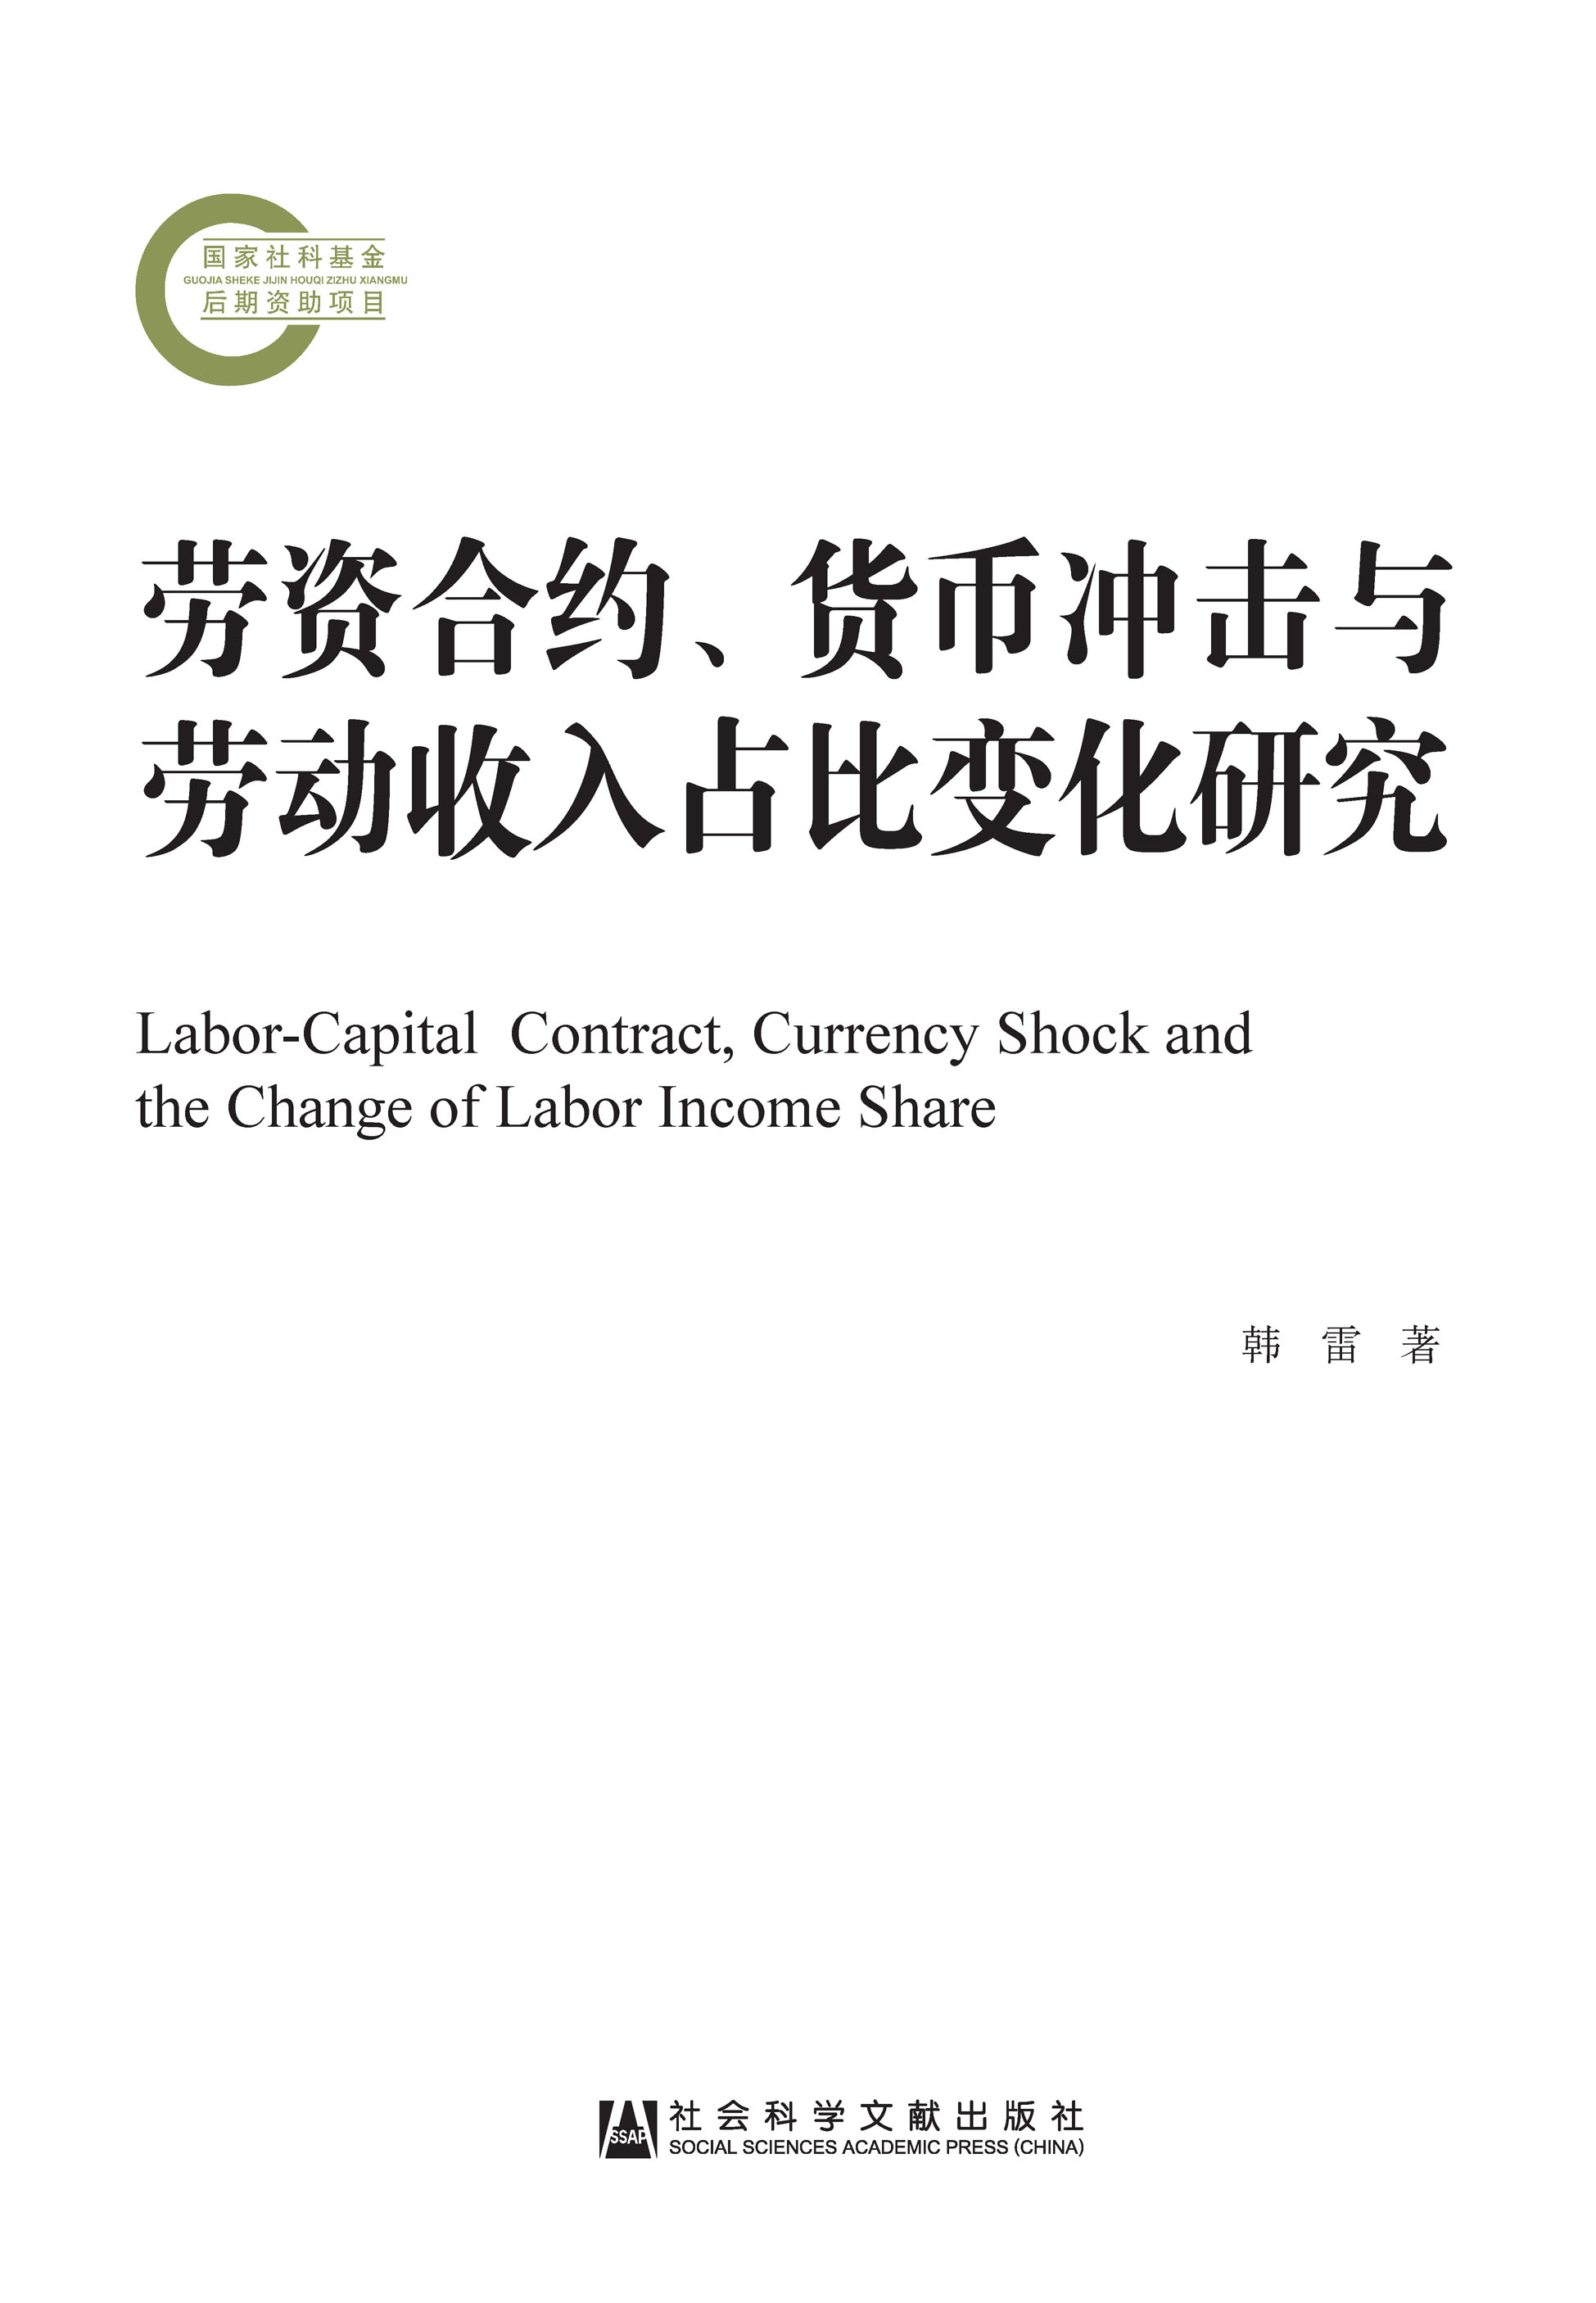 劳资合约、货币冲击与劳动收入占比变化研究